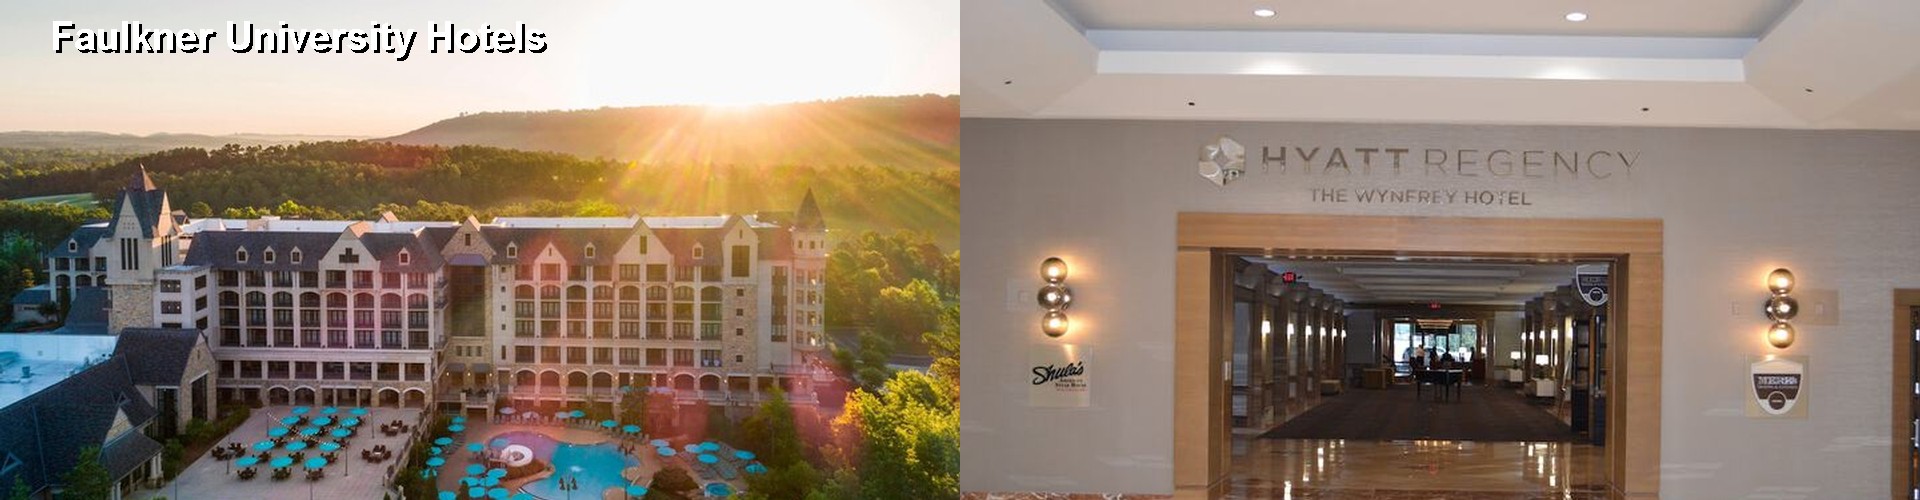 5 Best Hotels near Faulkner University